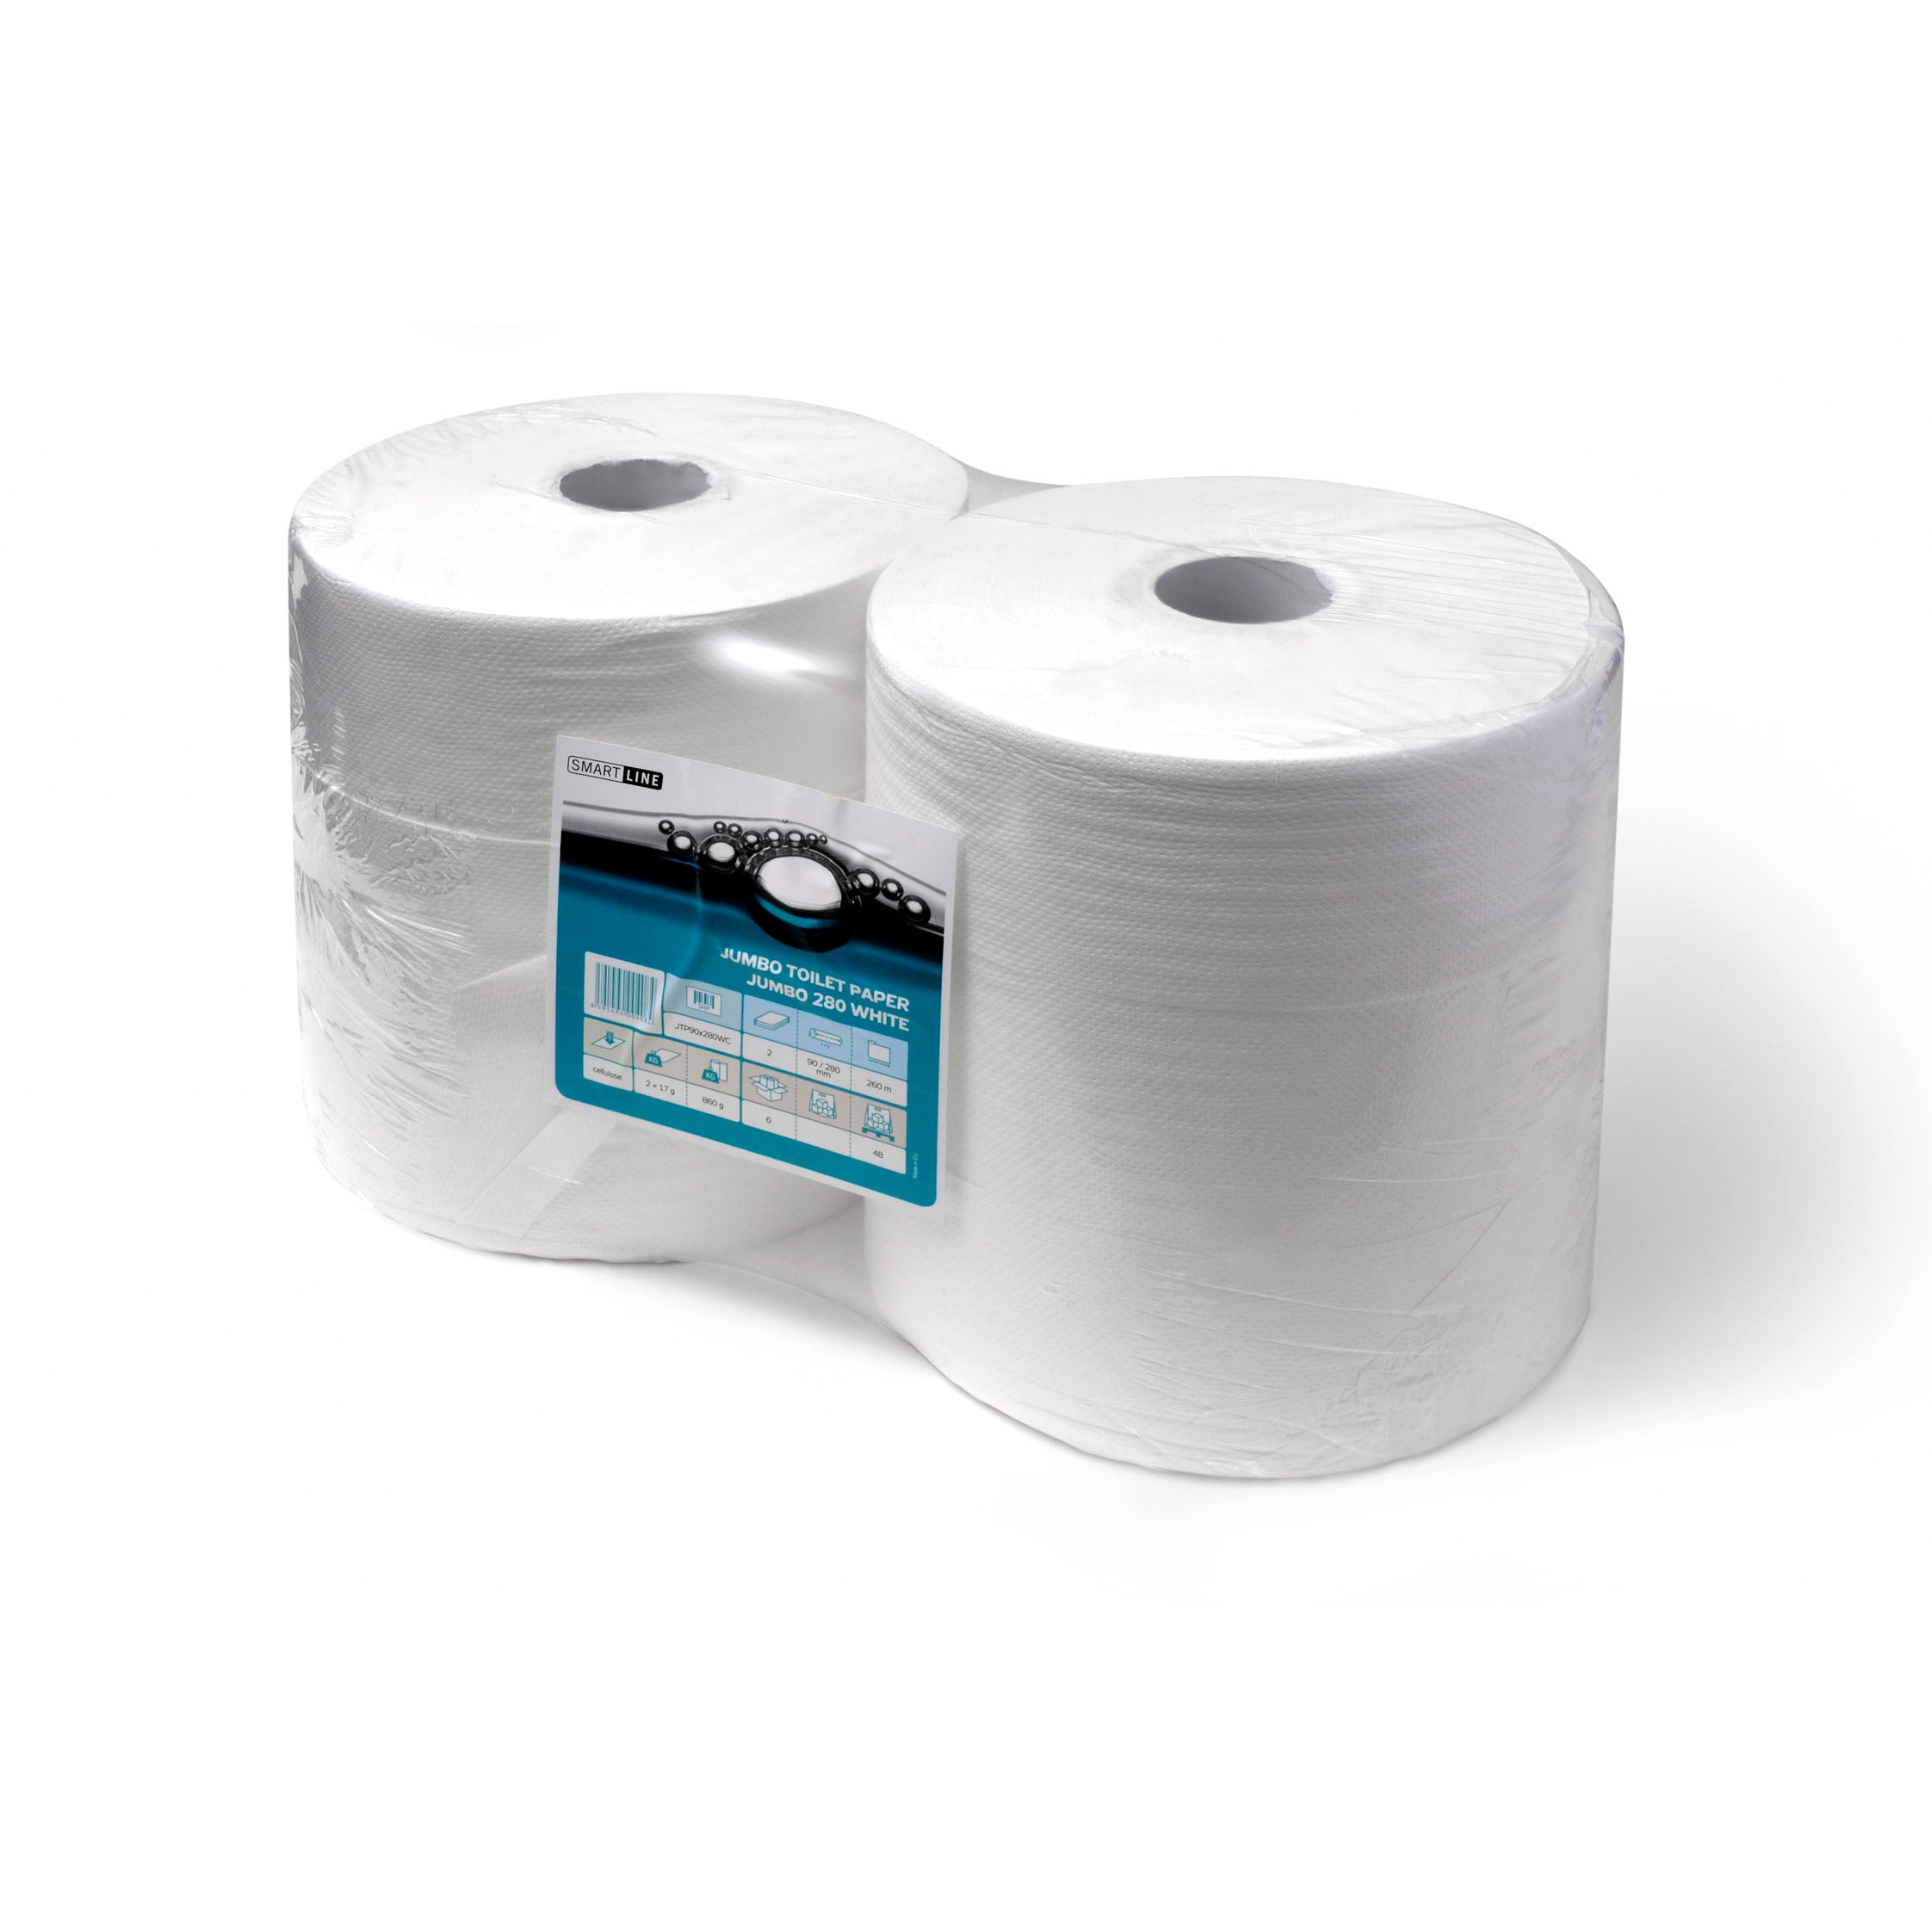 Papír toaletní v roli Smartline JUMBO šíře 240 mm, 2 vrstvy, recykl, bílý